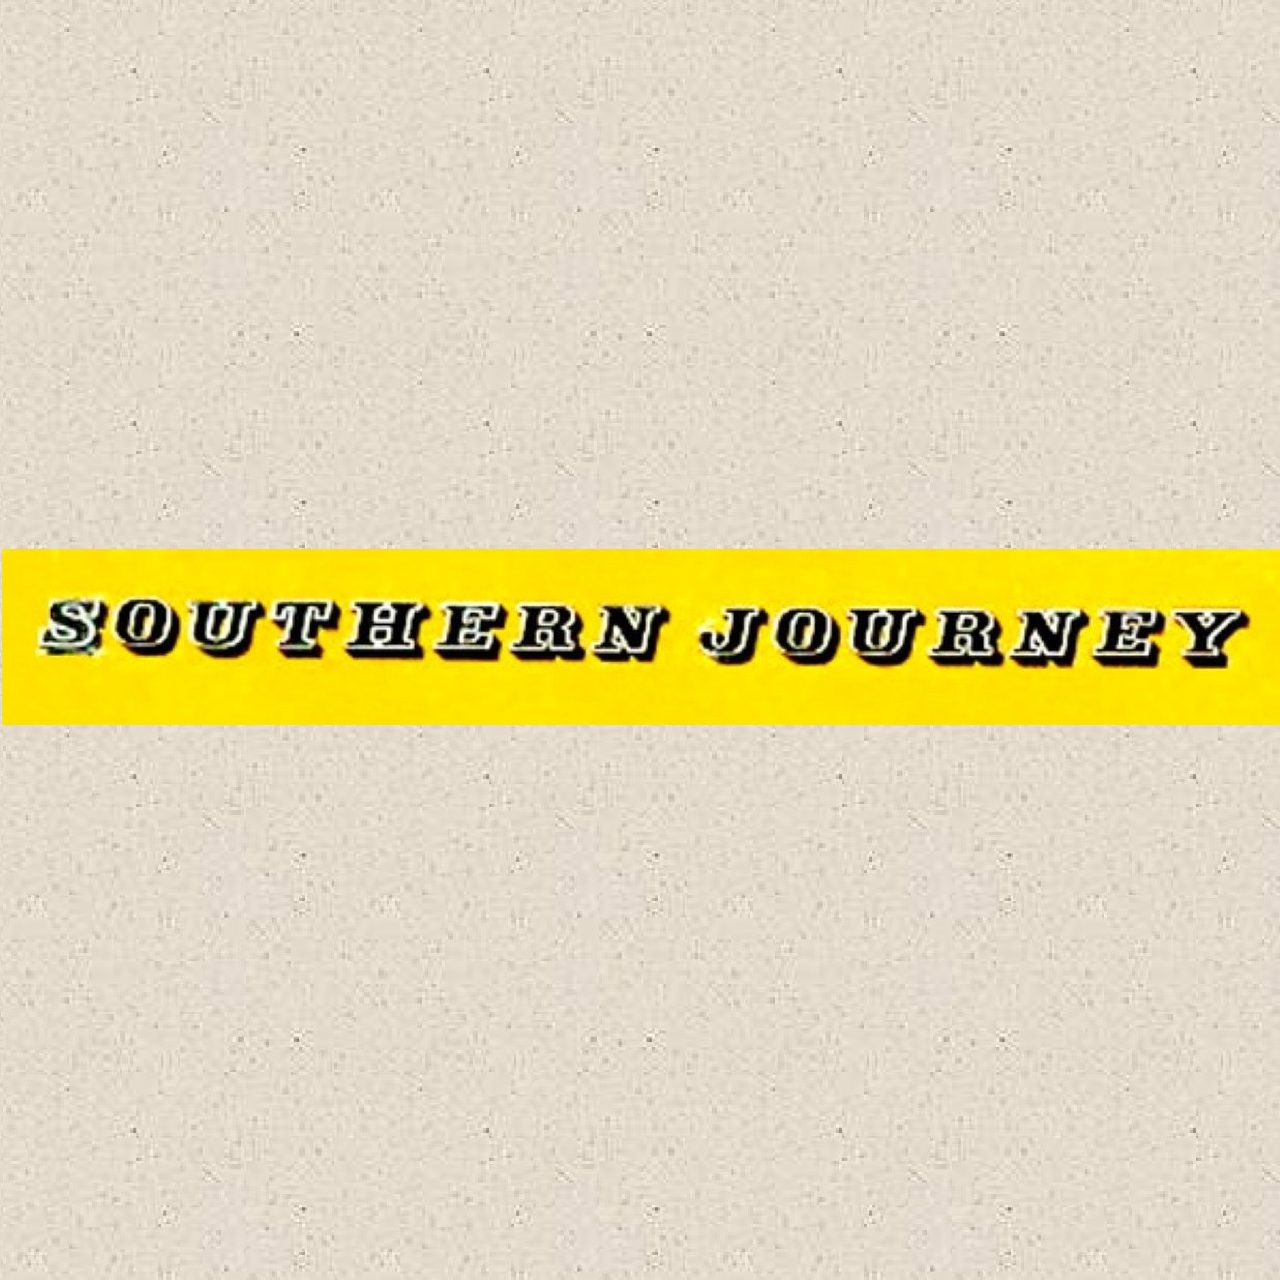 Southern Journey. A spasso per gli Stati del Sud in compagnia di Alan Lomax